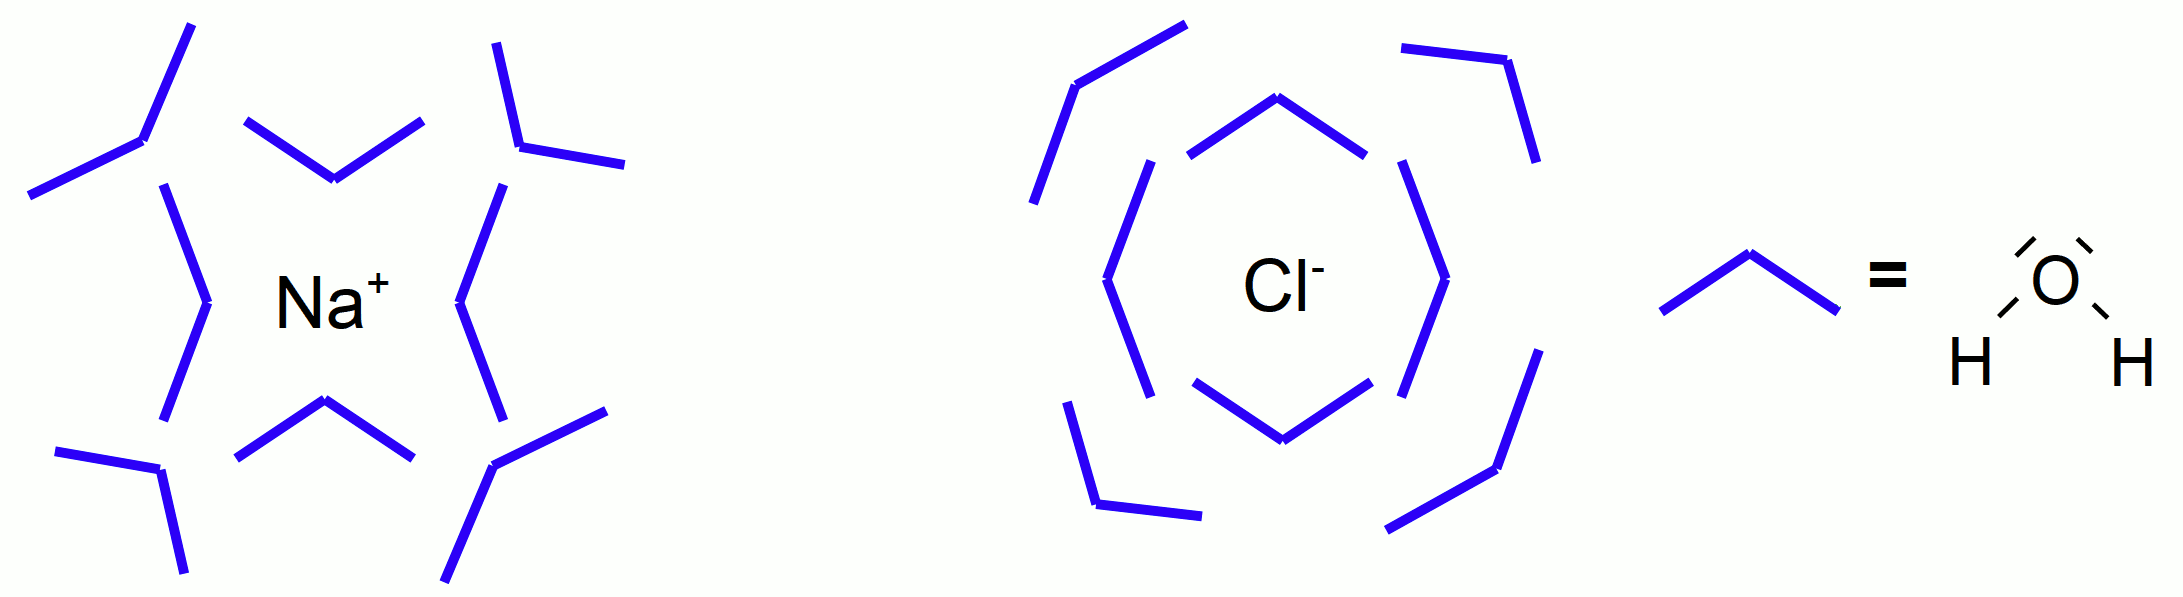 Hhydratisierung von NaCl (Na-Ionen, Cl-Ionen) nach dem "Bananenmodell"